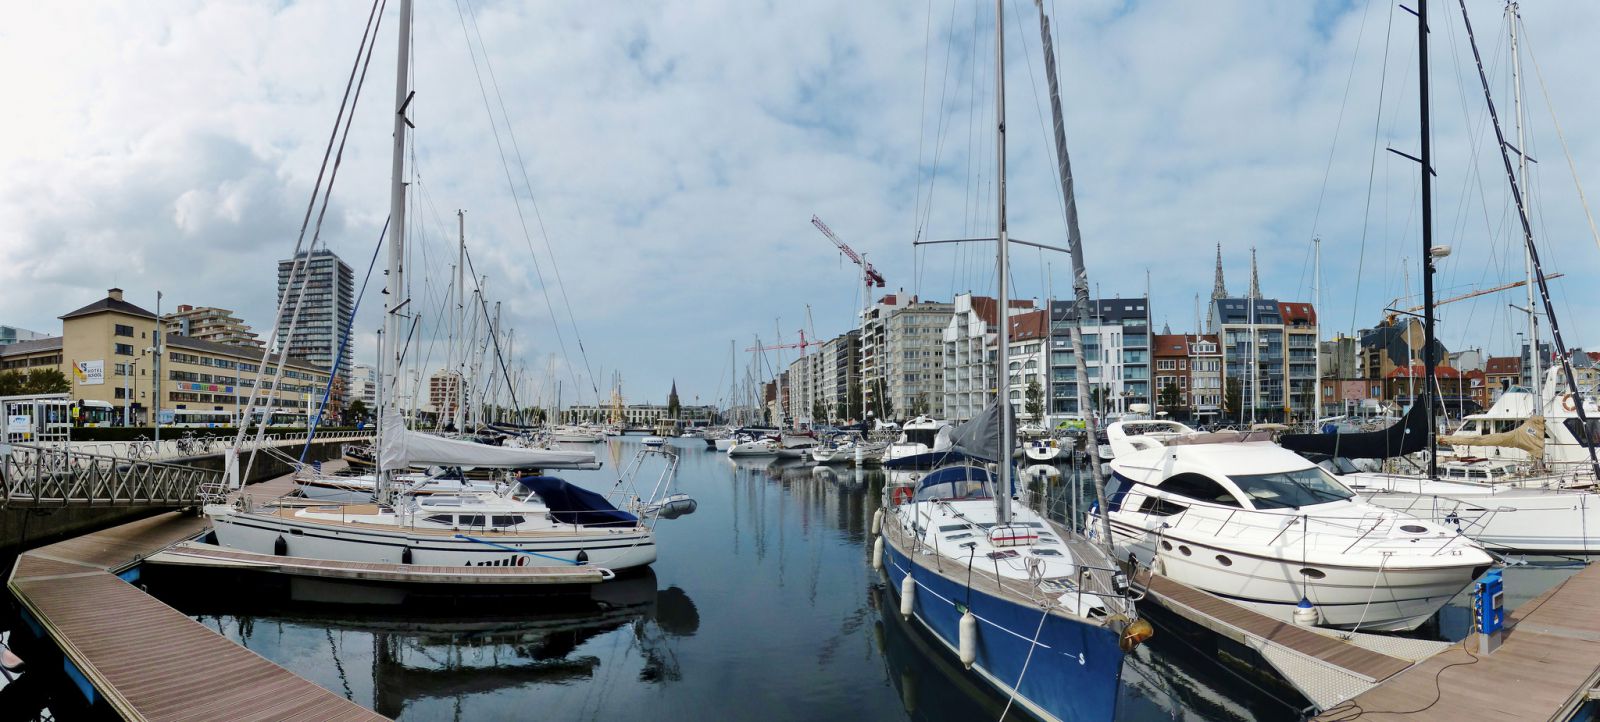 Пристань для частных яхт Остенде - Остенде, Бельгия фото #32309